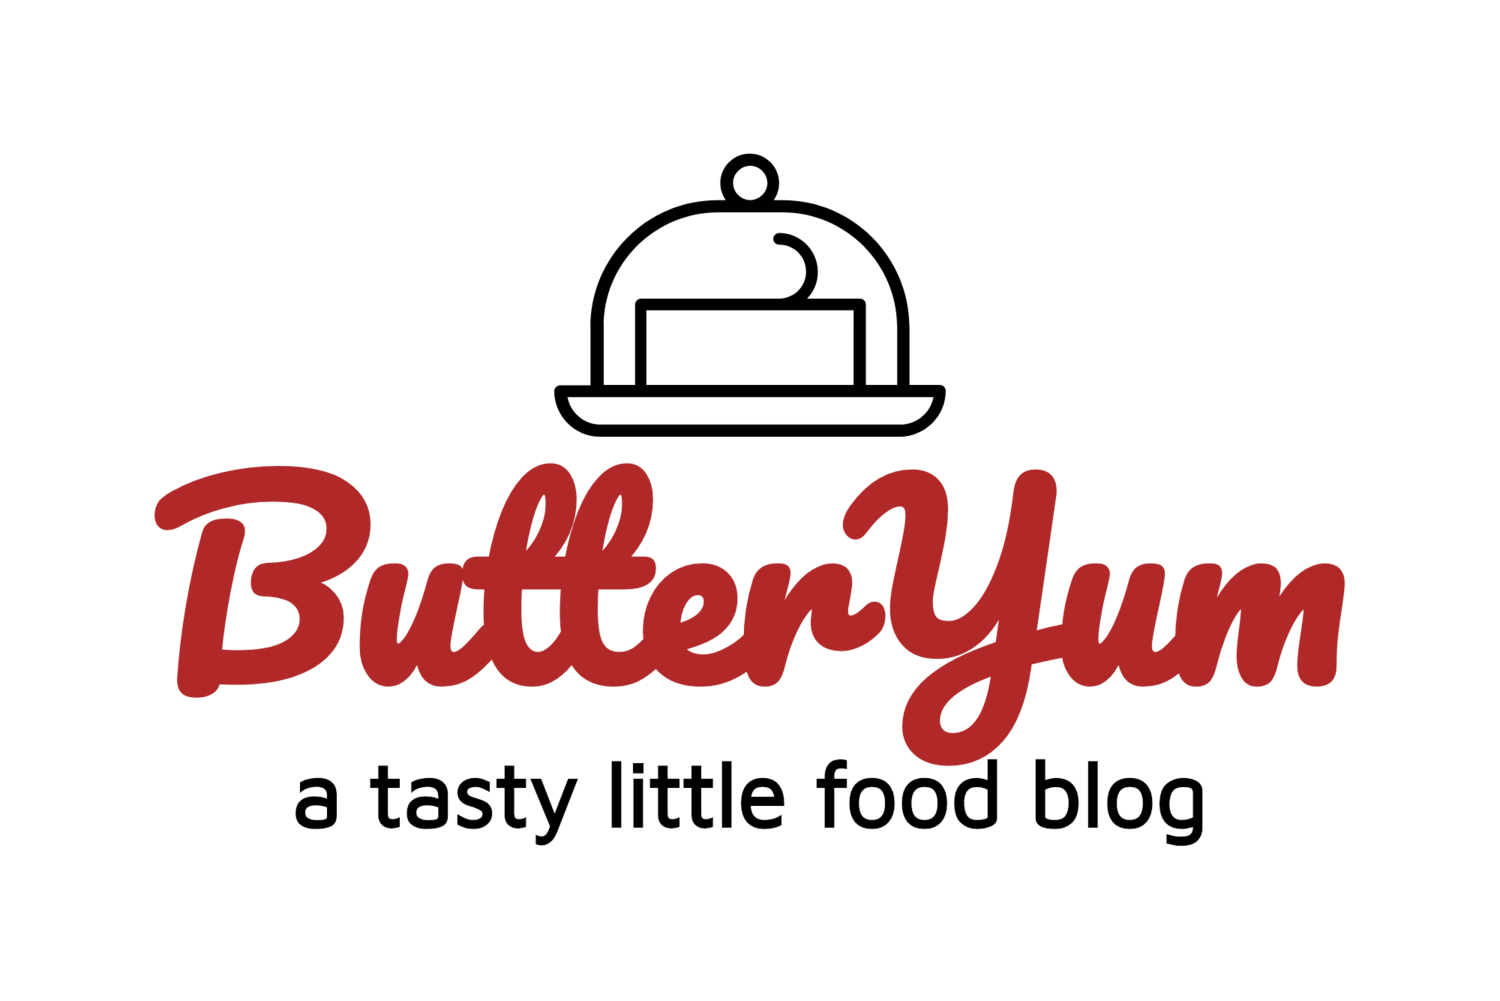 ButterYum — a tasty little food blog